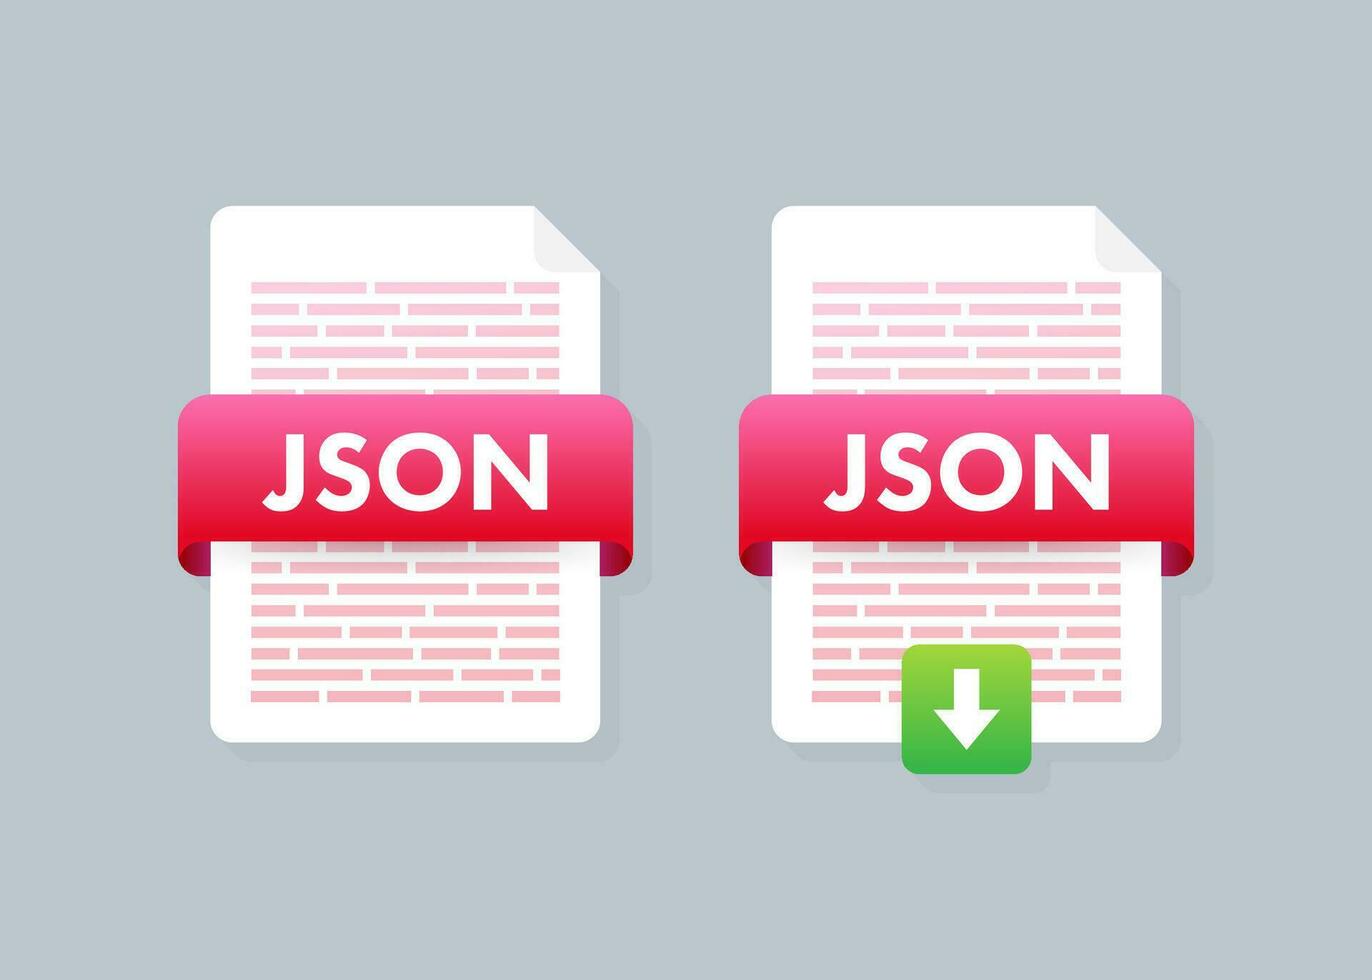 Télécharger json bouton. Téléchargement document concept. fichier avec json étiquette et vers le bas La Flèche signe. vecteur illustration